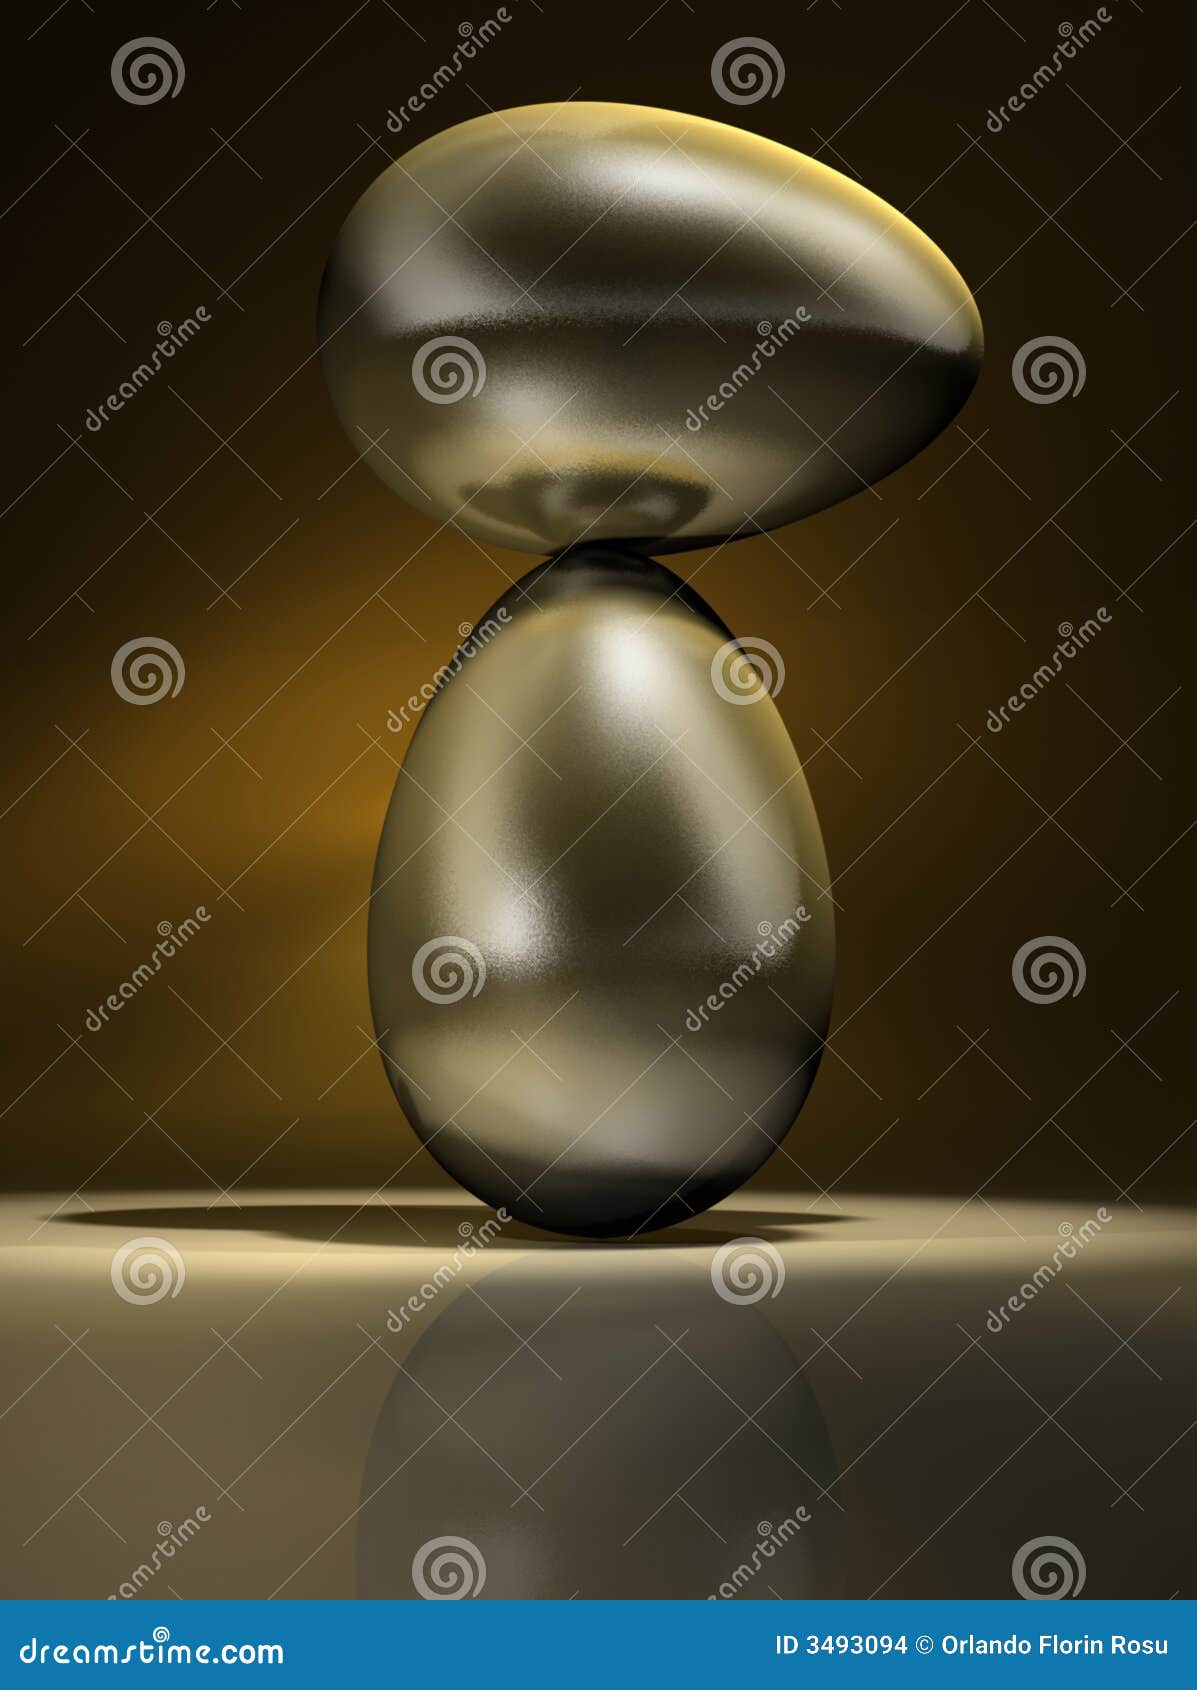 golden eggs equilibrium